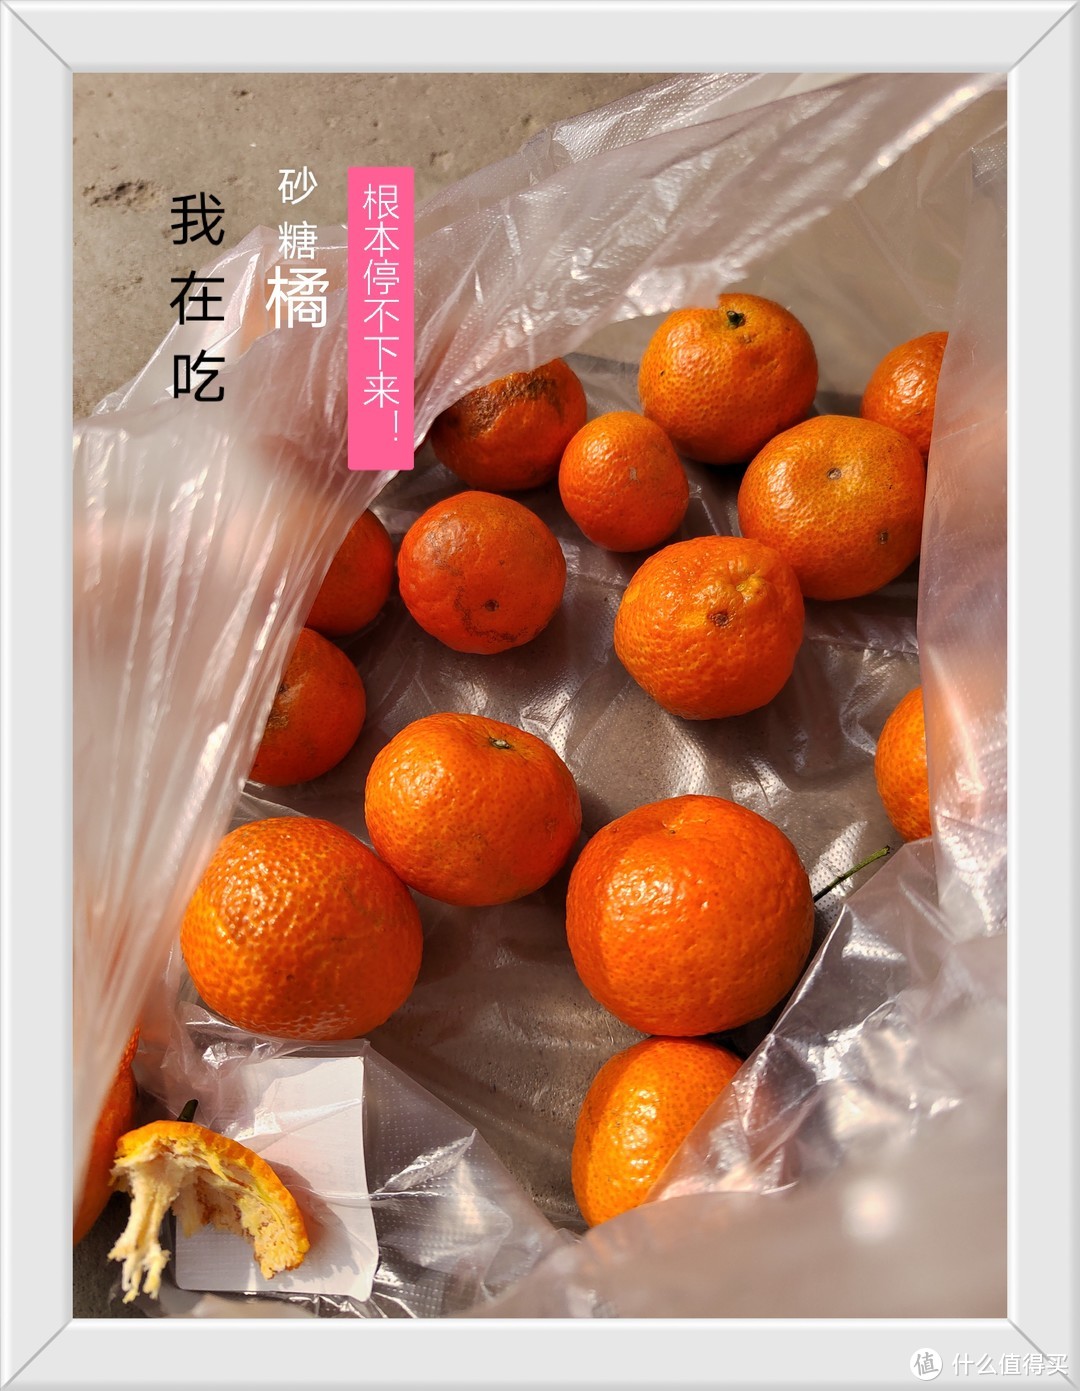 有想吃的水果吗？砂糖橘是个不错的选择哦！